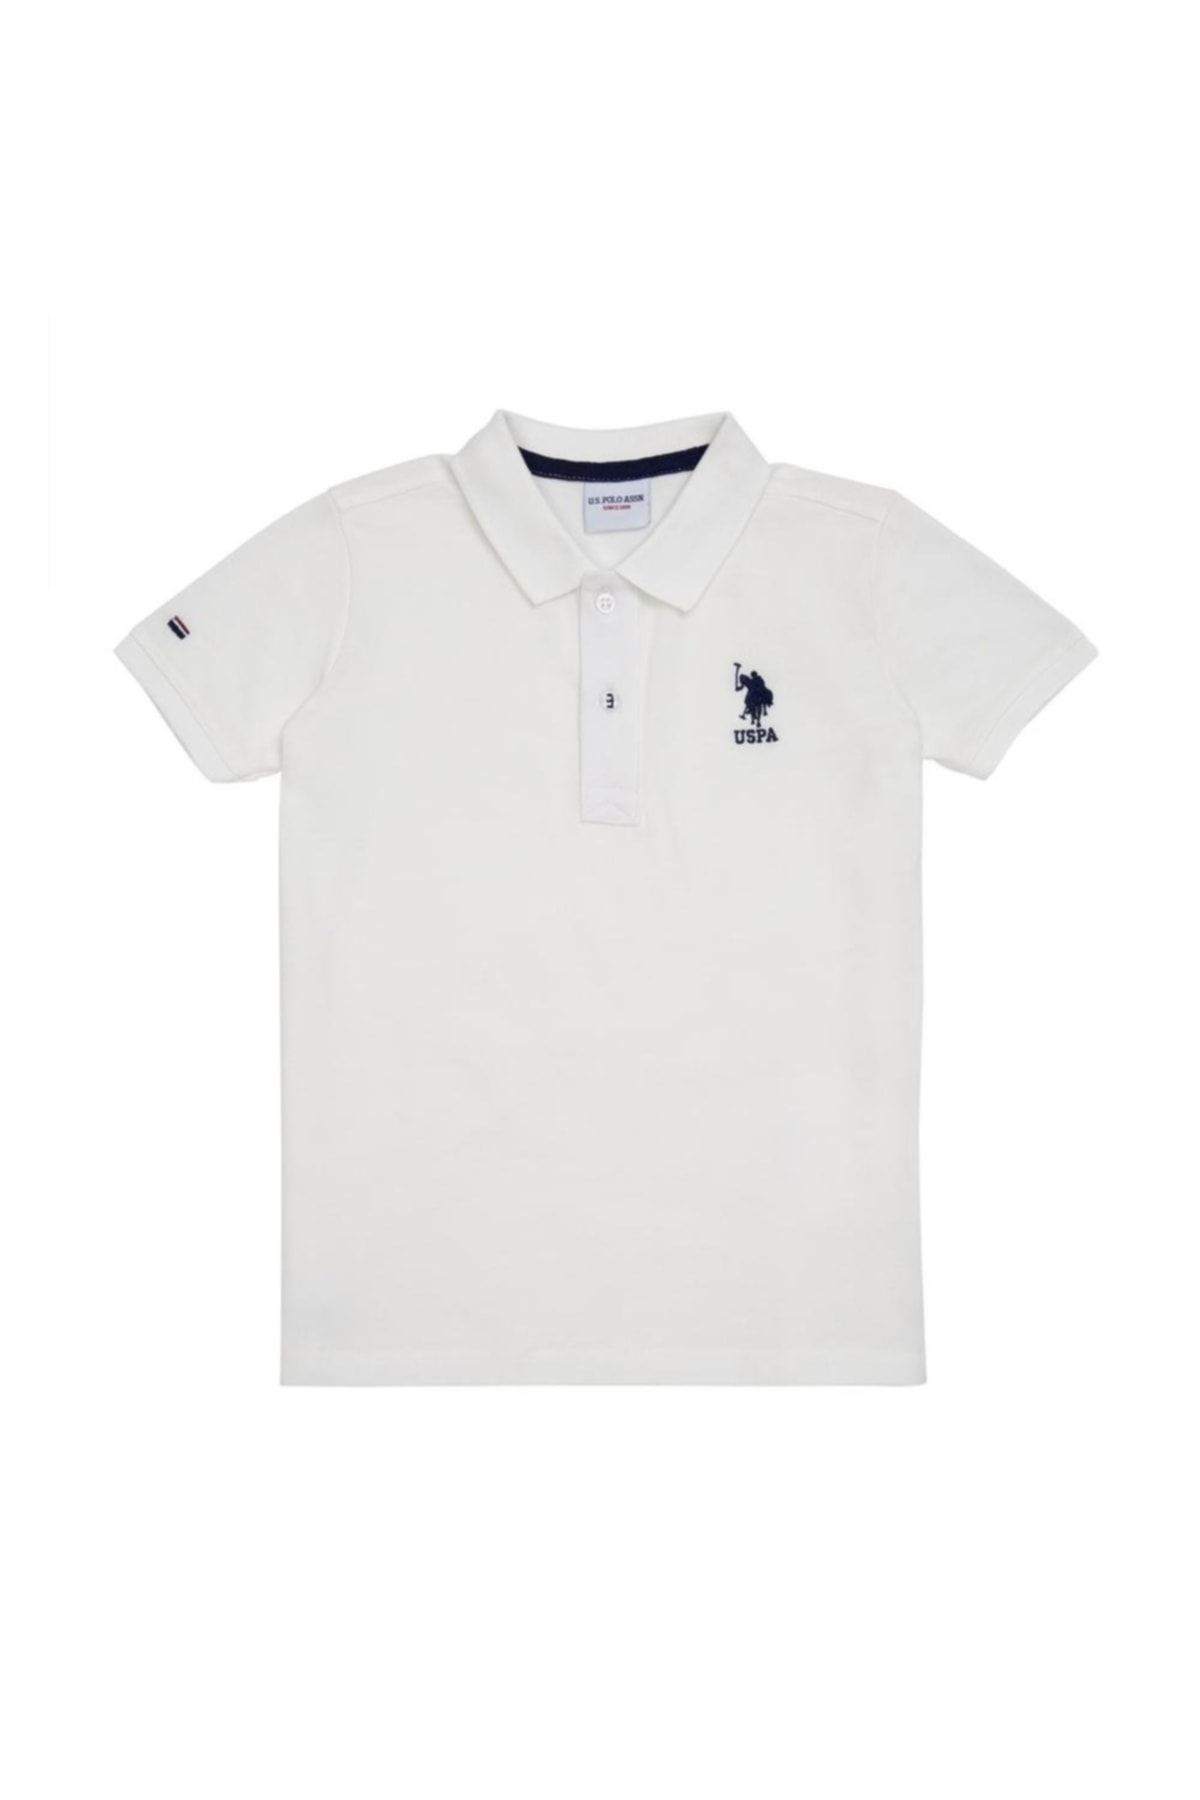 U.S. Polo Assn. Erkek Çocuk T-shirt